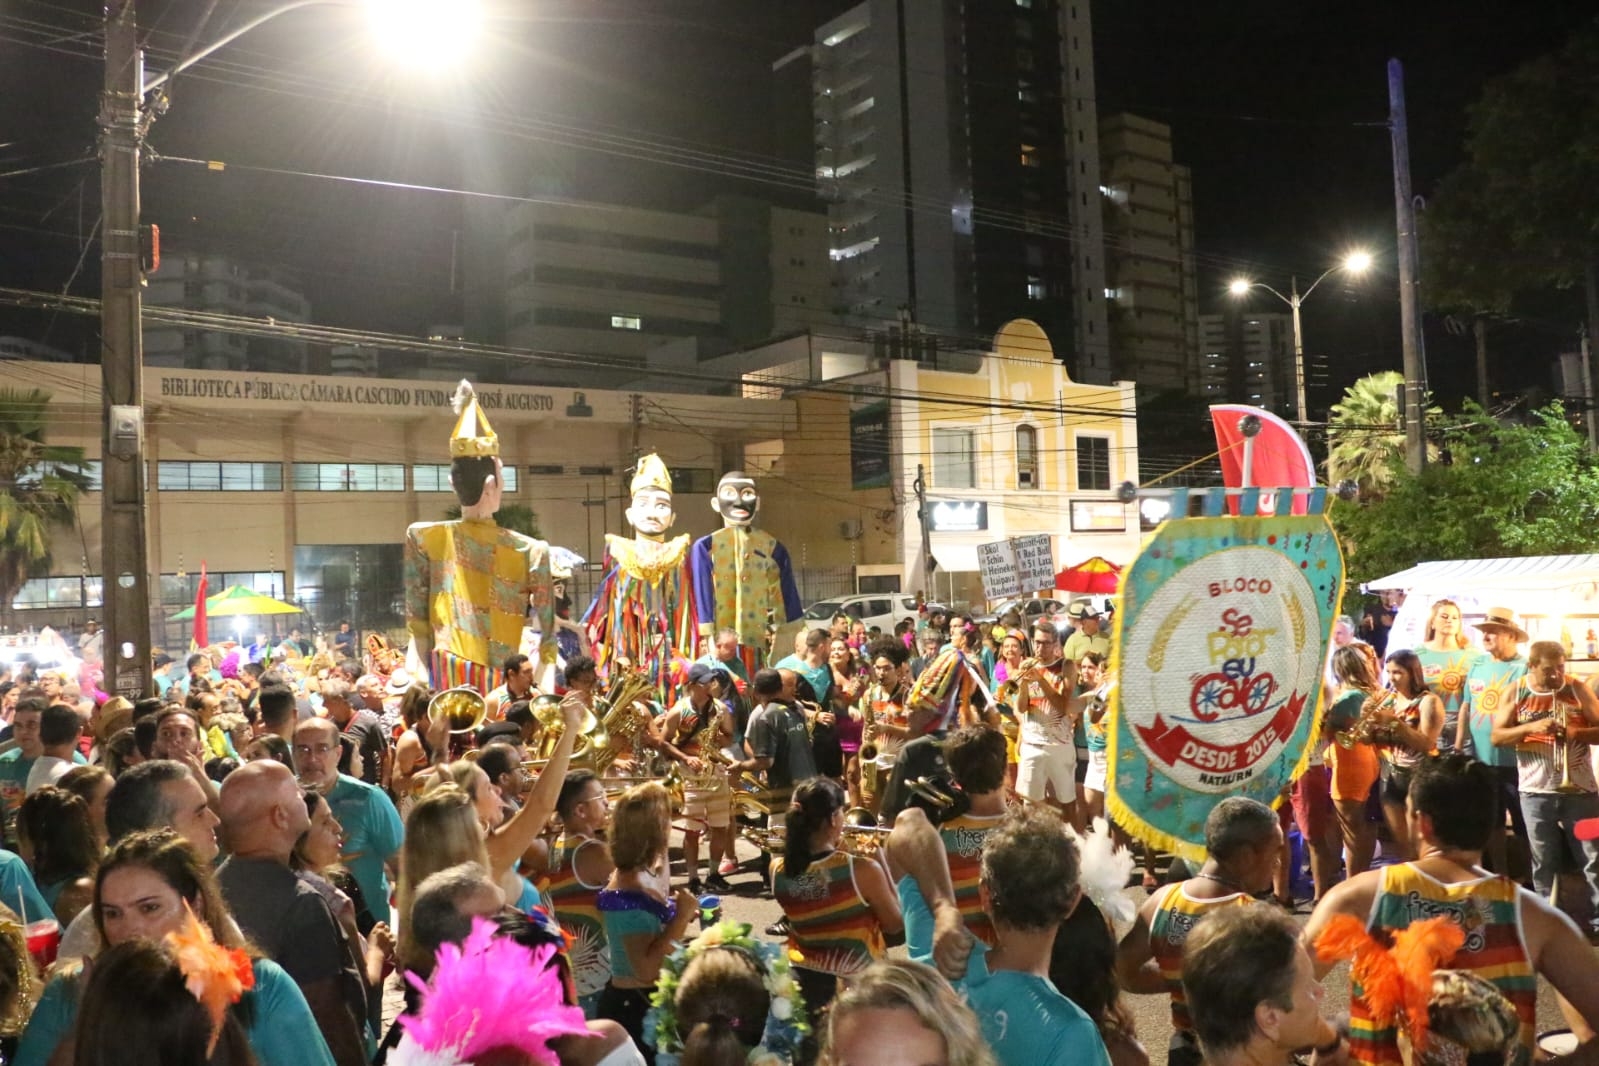 Baile de máscaras abre o carnaval de Natal nesta quinta-feira. Confira! -  Ponta Negra News